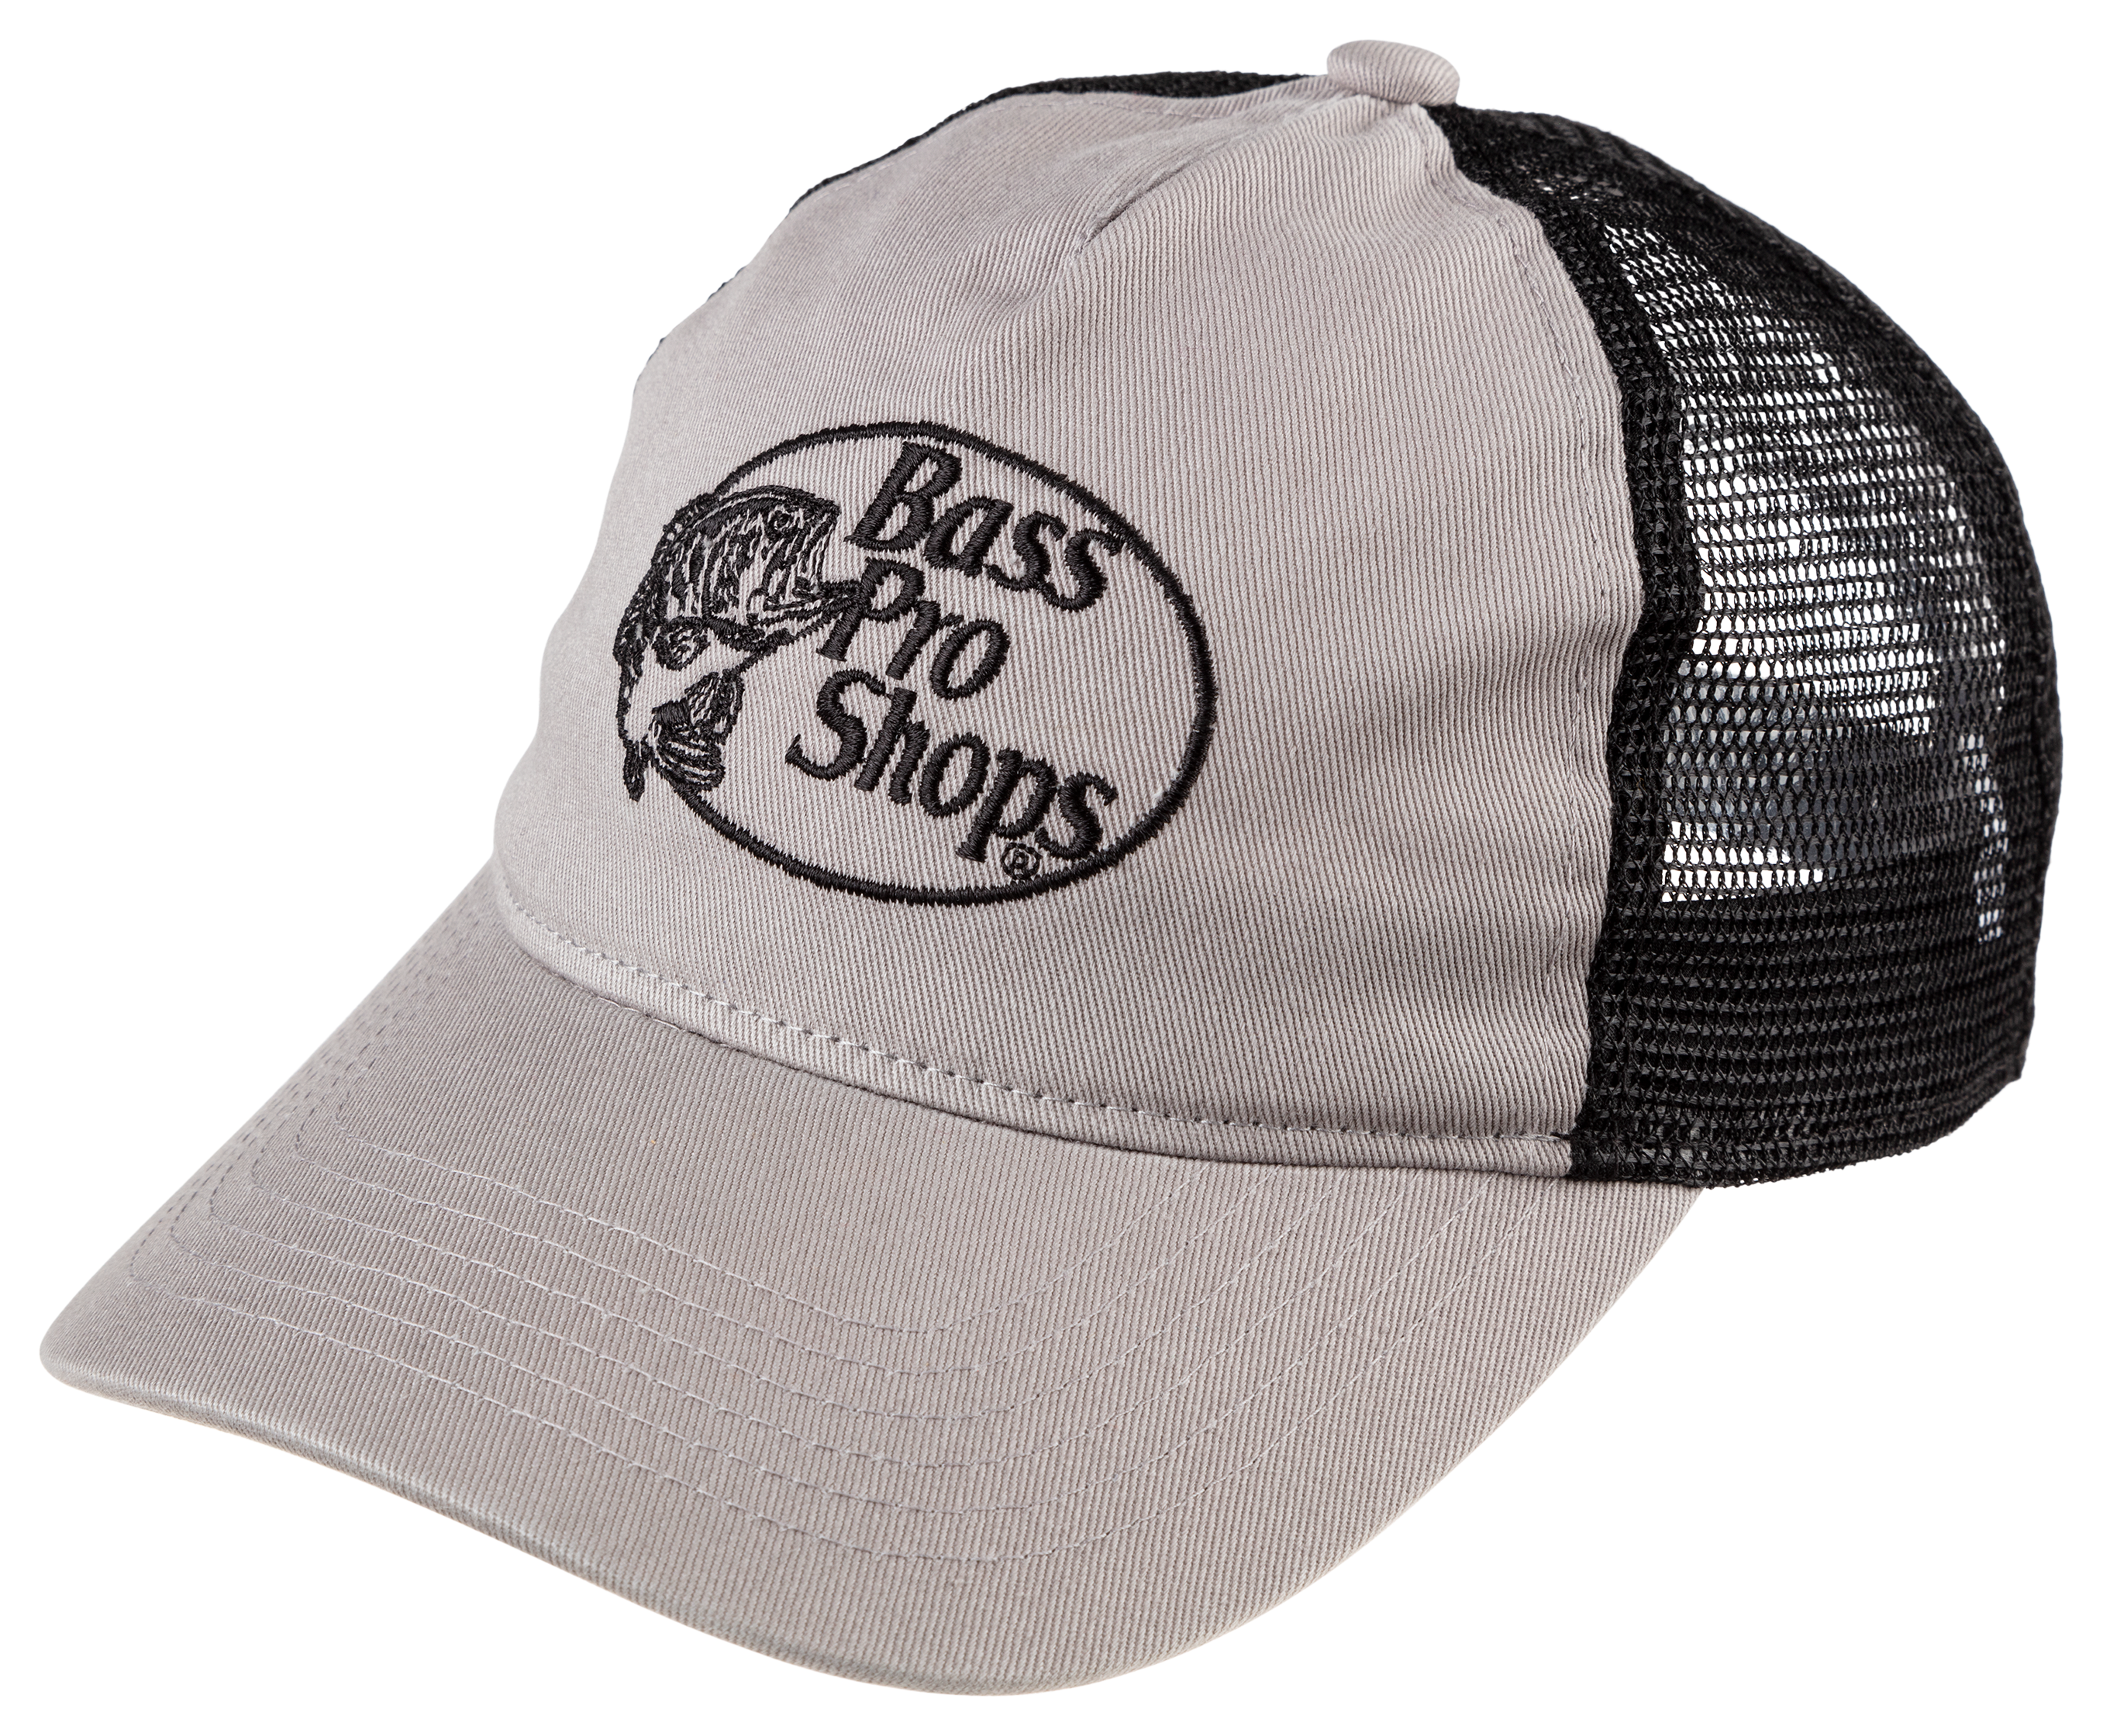 Bass Pro Shop Cap | Rhinestone Cap | Customize Cap | Mesh Caps | Ladies Trucker Caps | Style Caps | Baseball Caps | Ladies Hat 